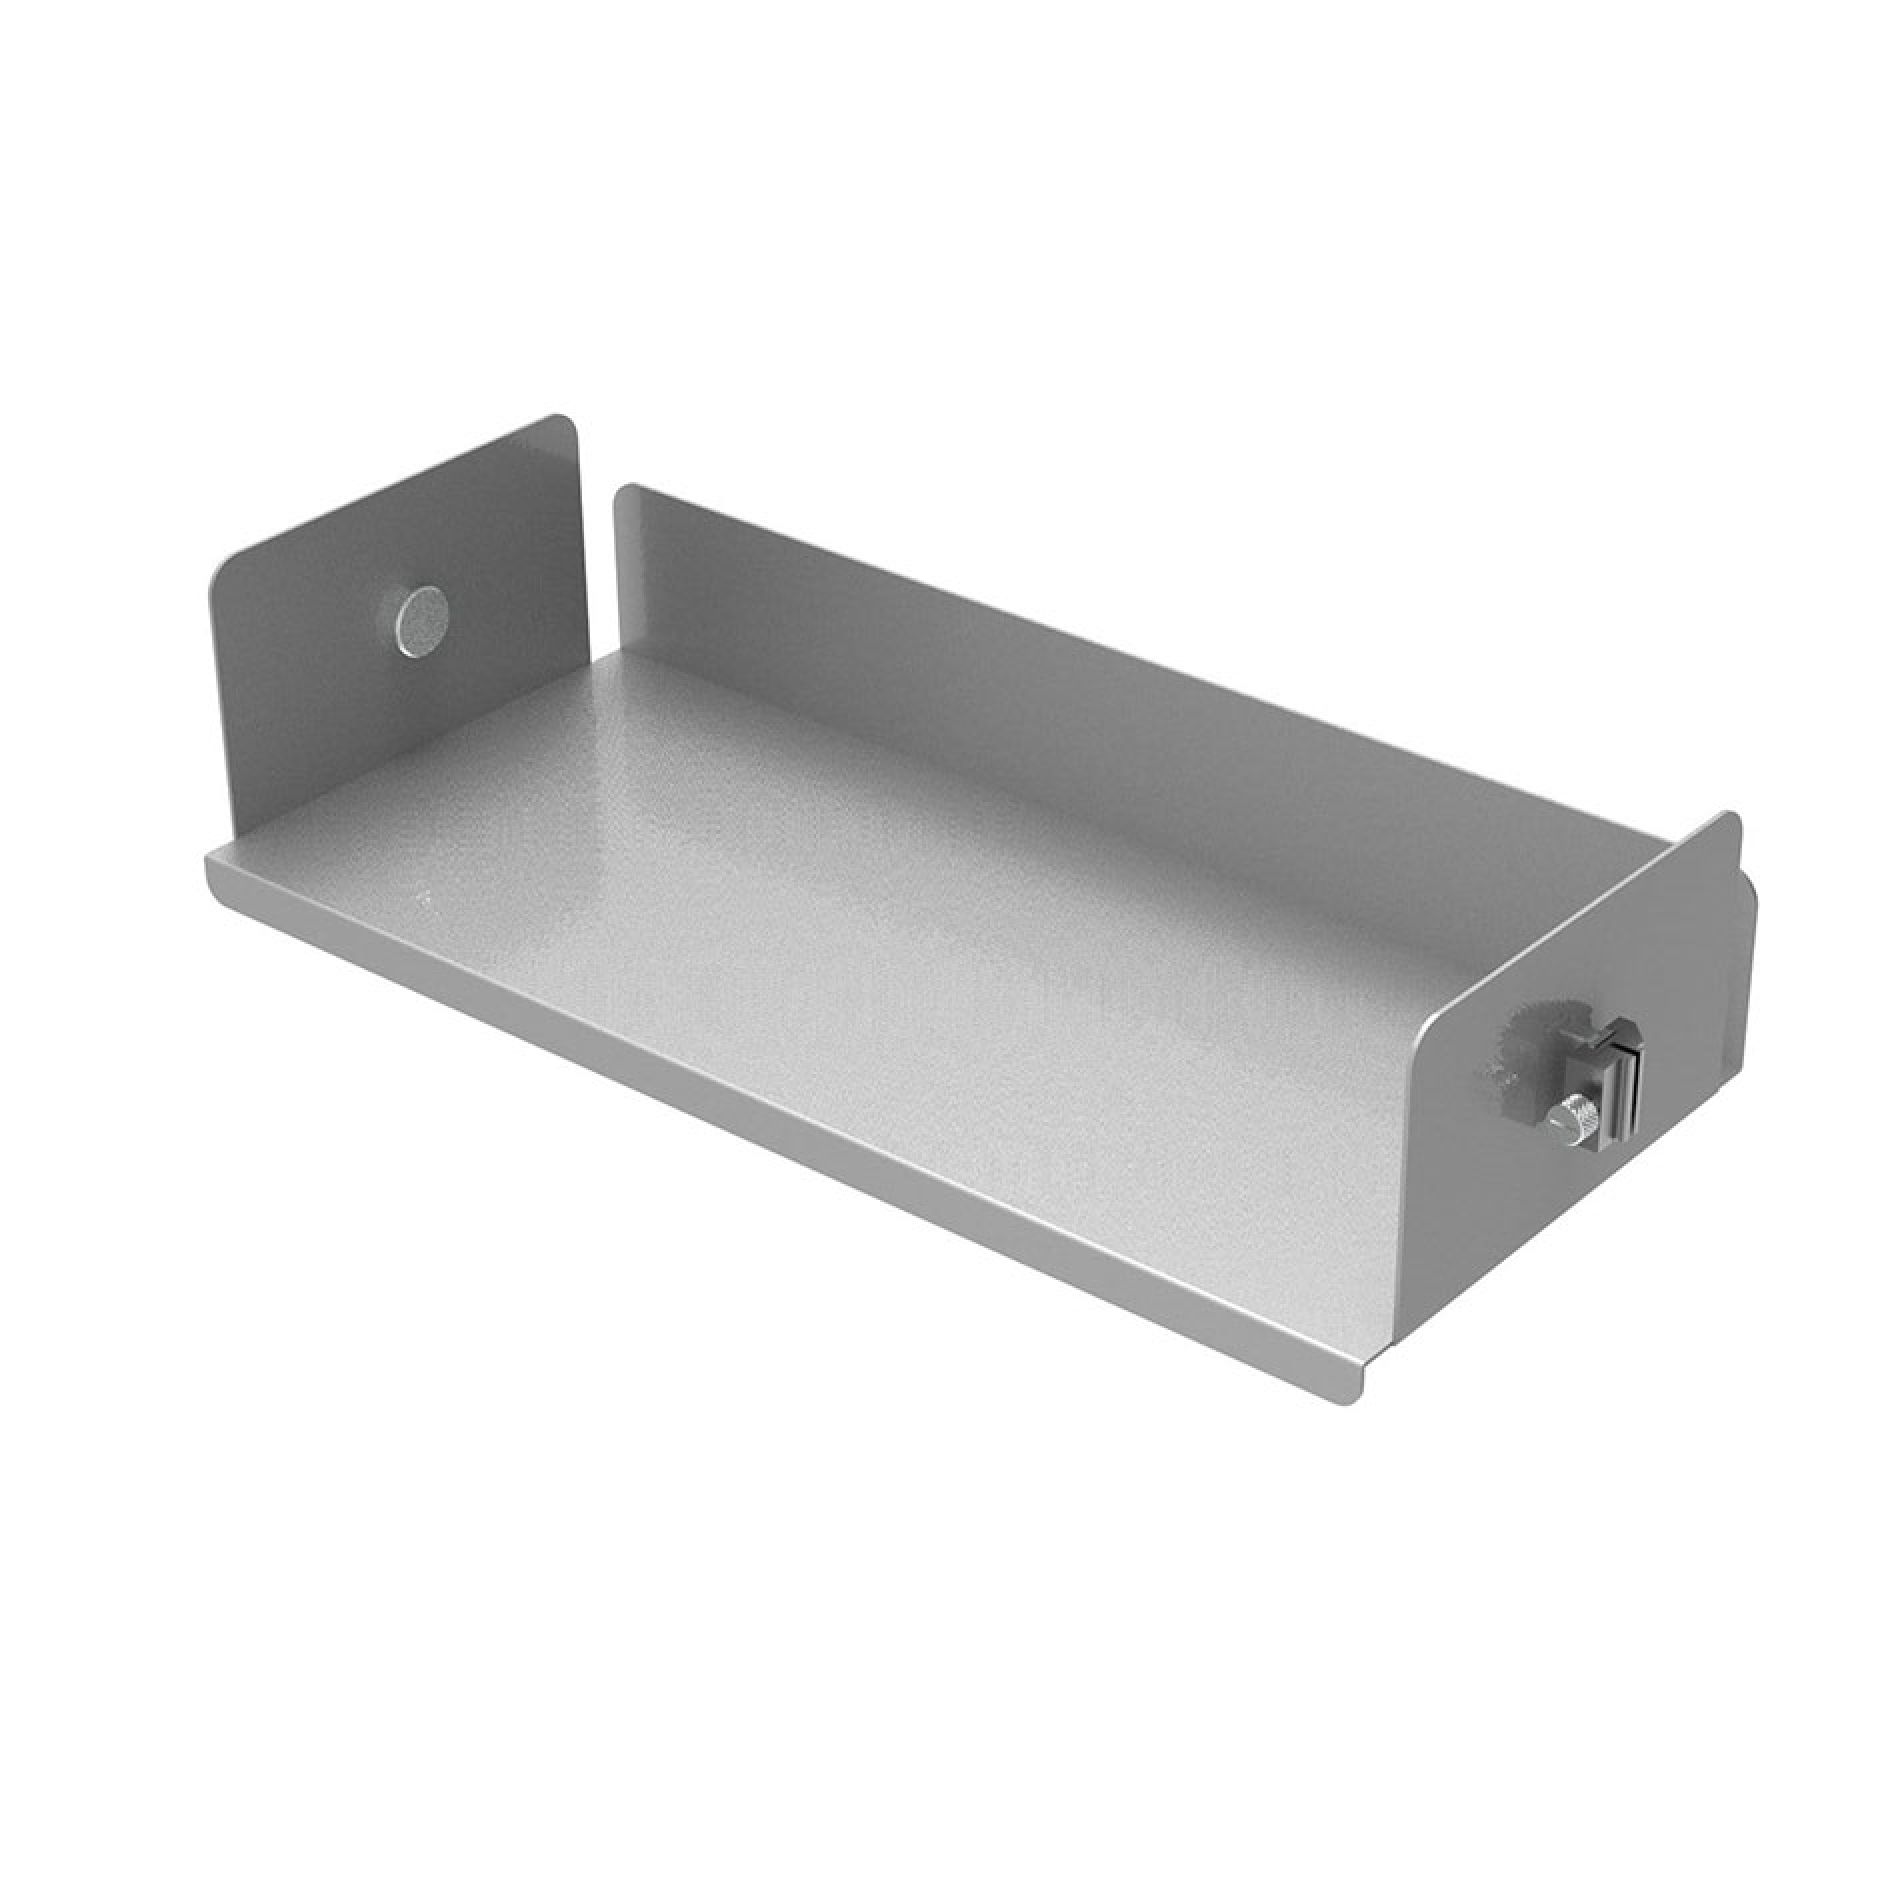 U-shaped aluminium shelf